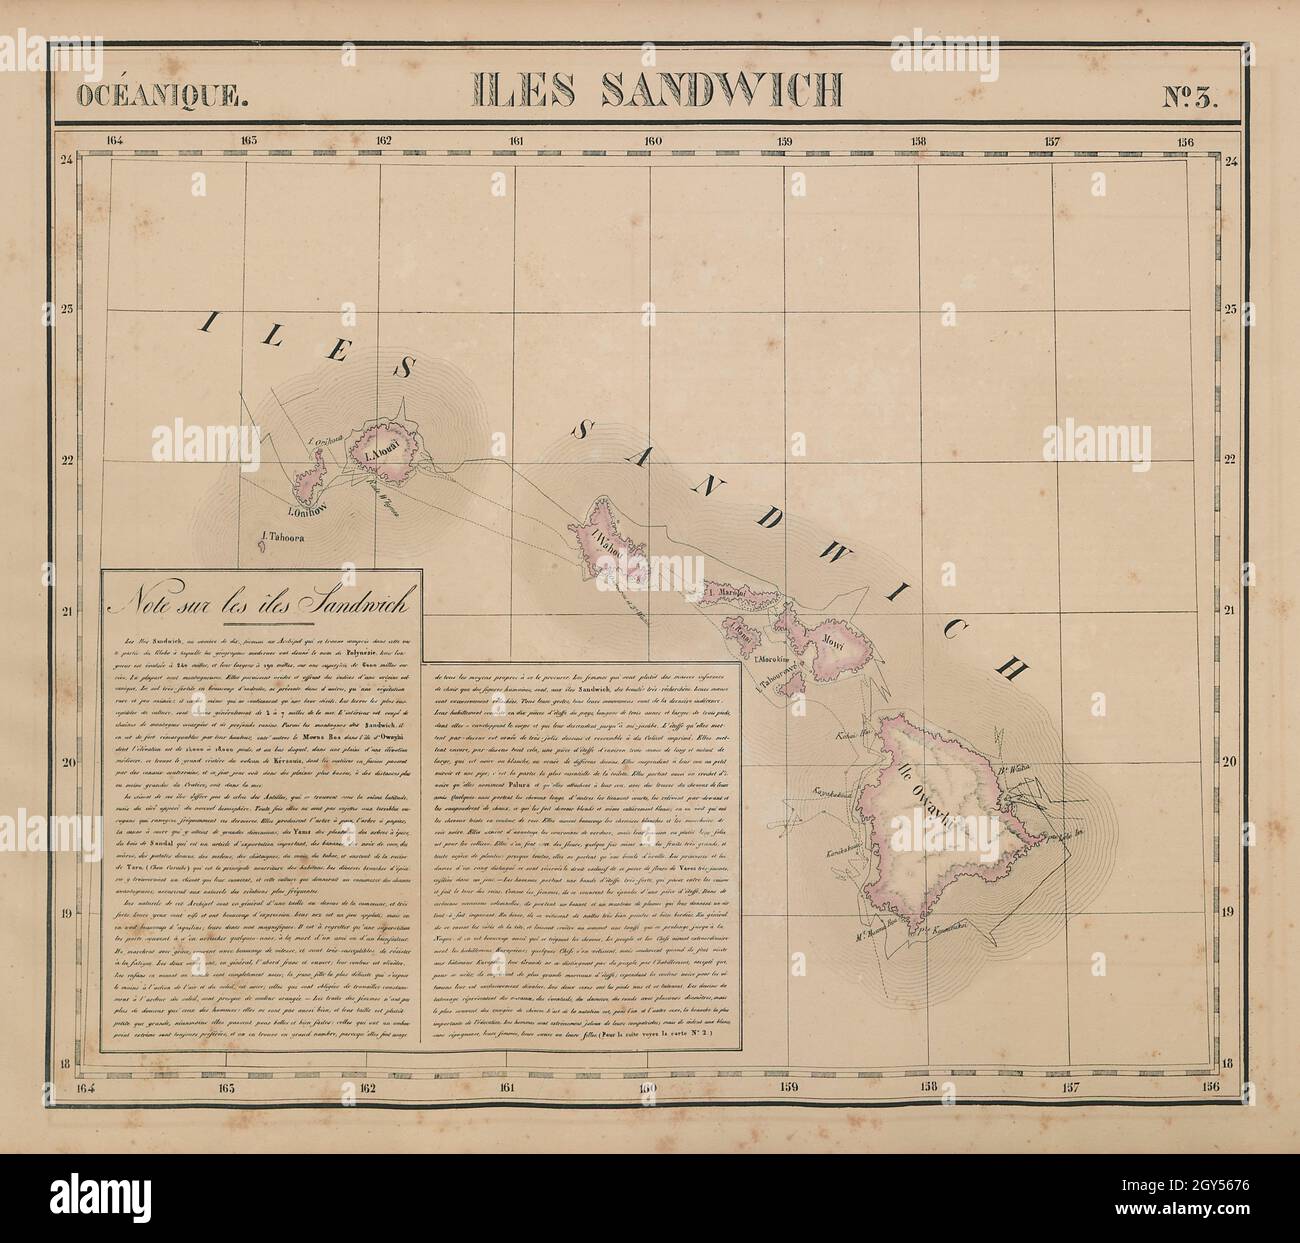 Océanique. Iles Sandwich #3. Hawaii Oahu Kauai Maui. VANDERMAELEN 1827 alte Karte Stockfoto